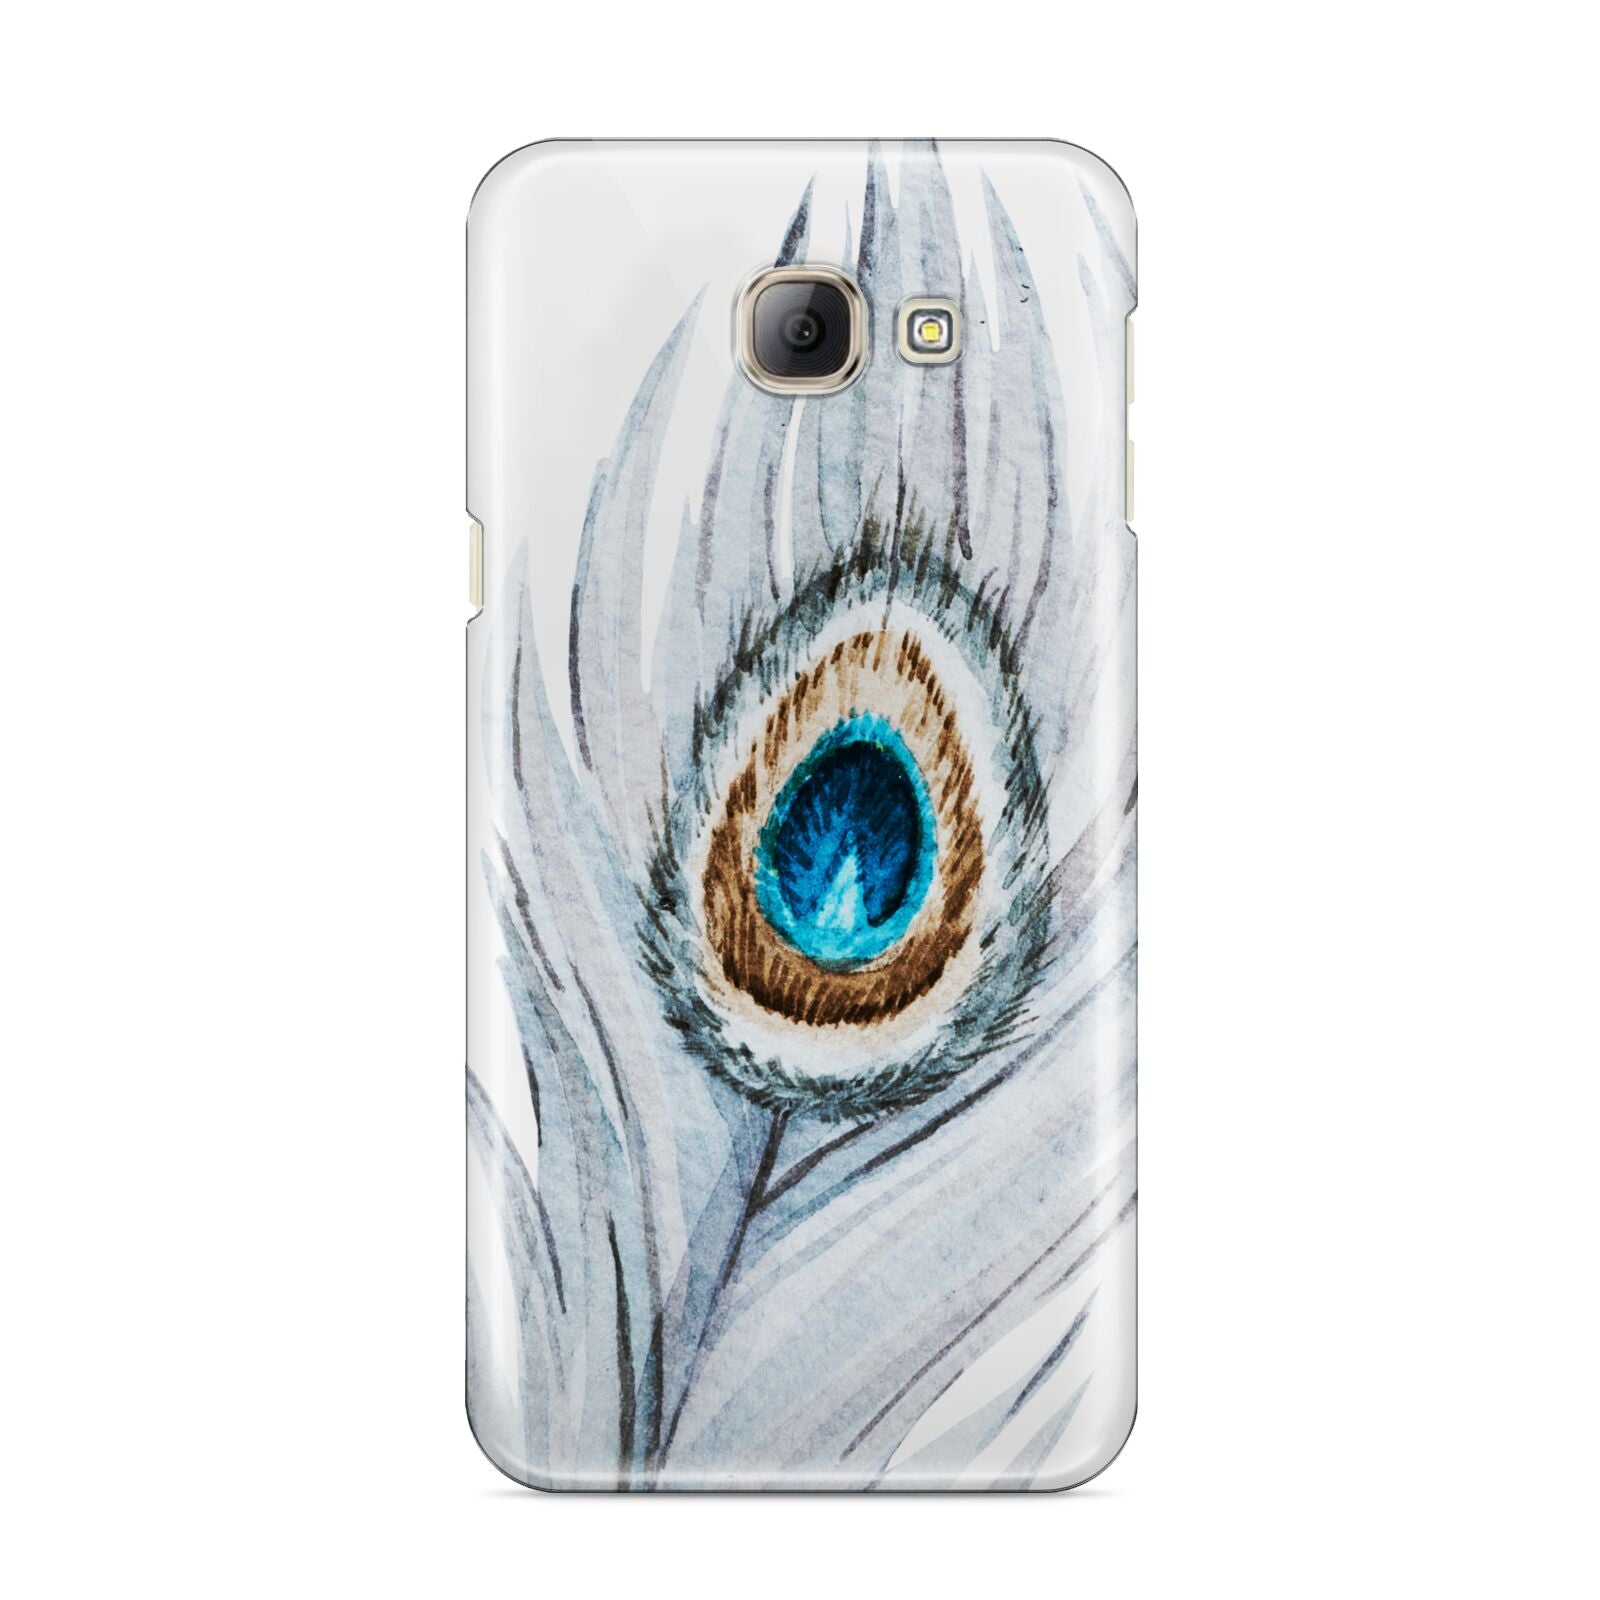 Peacock Samsung Galaxy A8 2016 Case